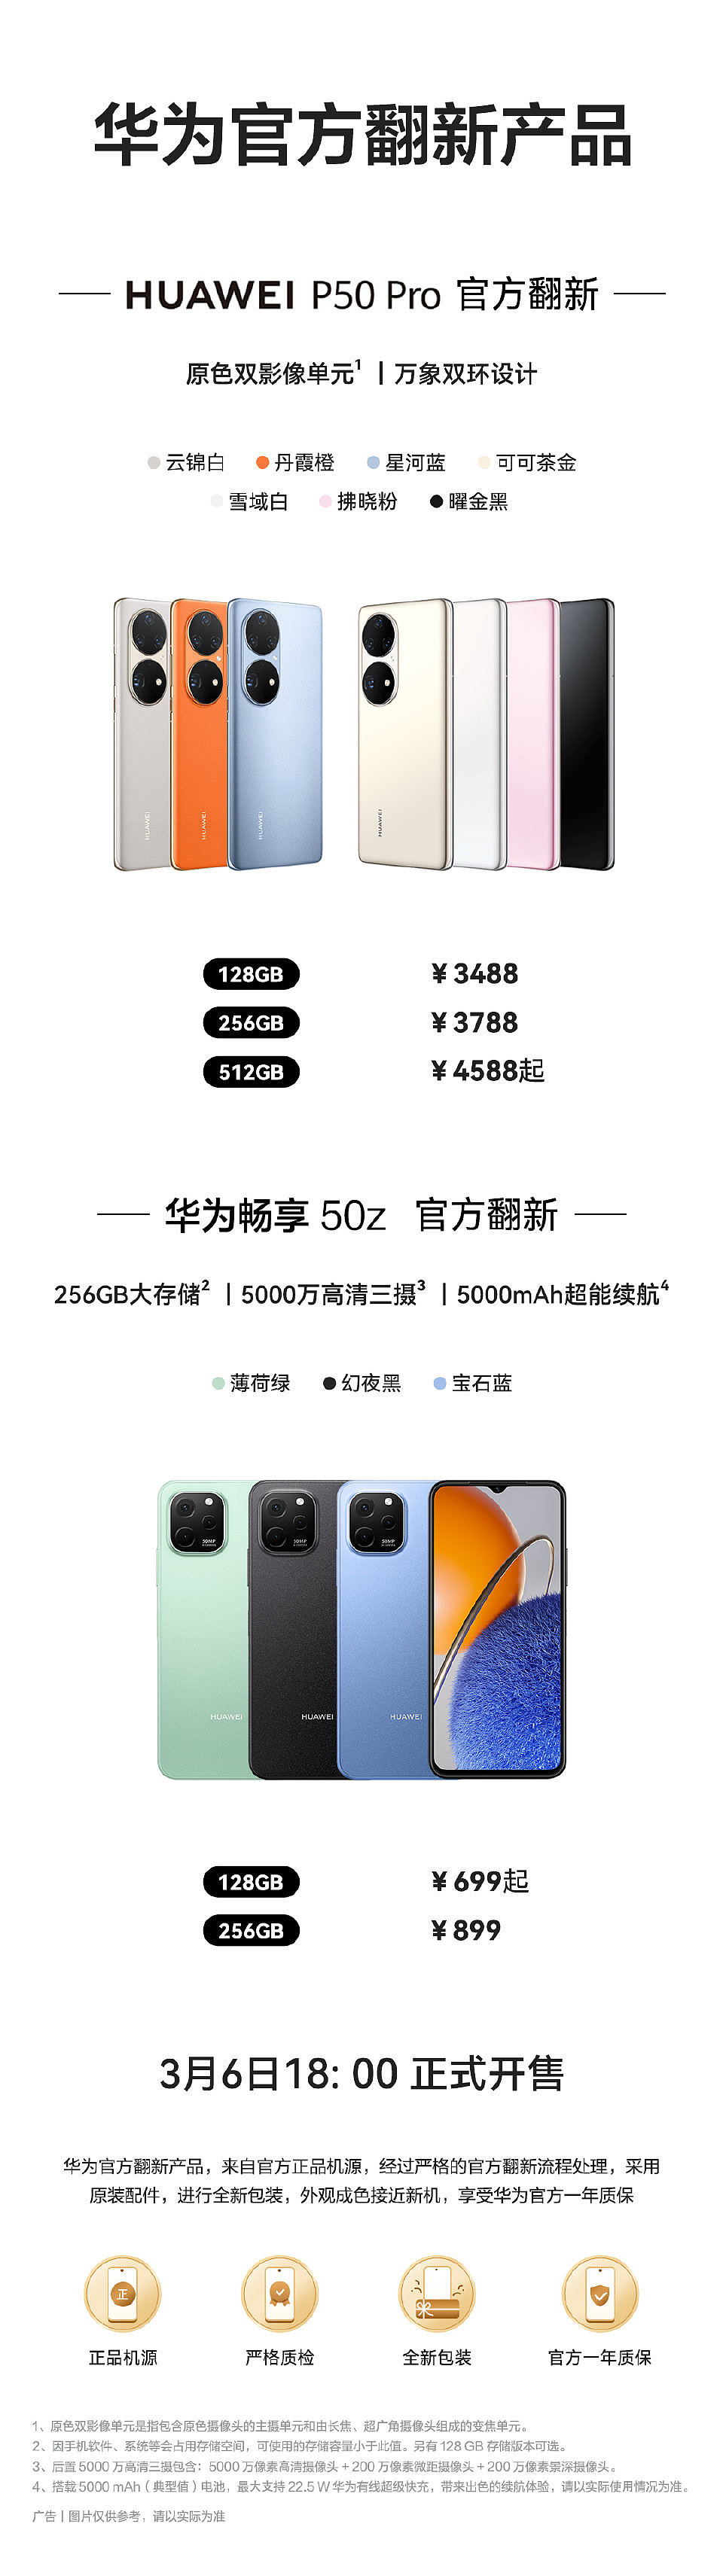 3488 元 / 699 元起，华为 P50 Pro、畅享 50z 官方翻新机开售 - 1